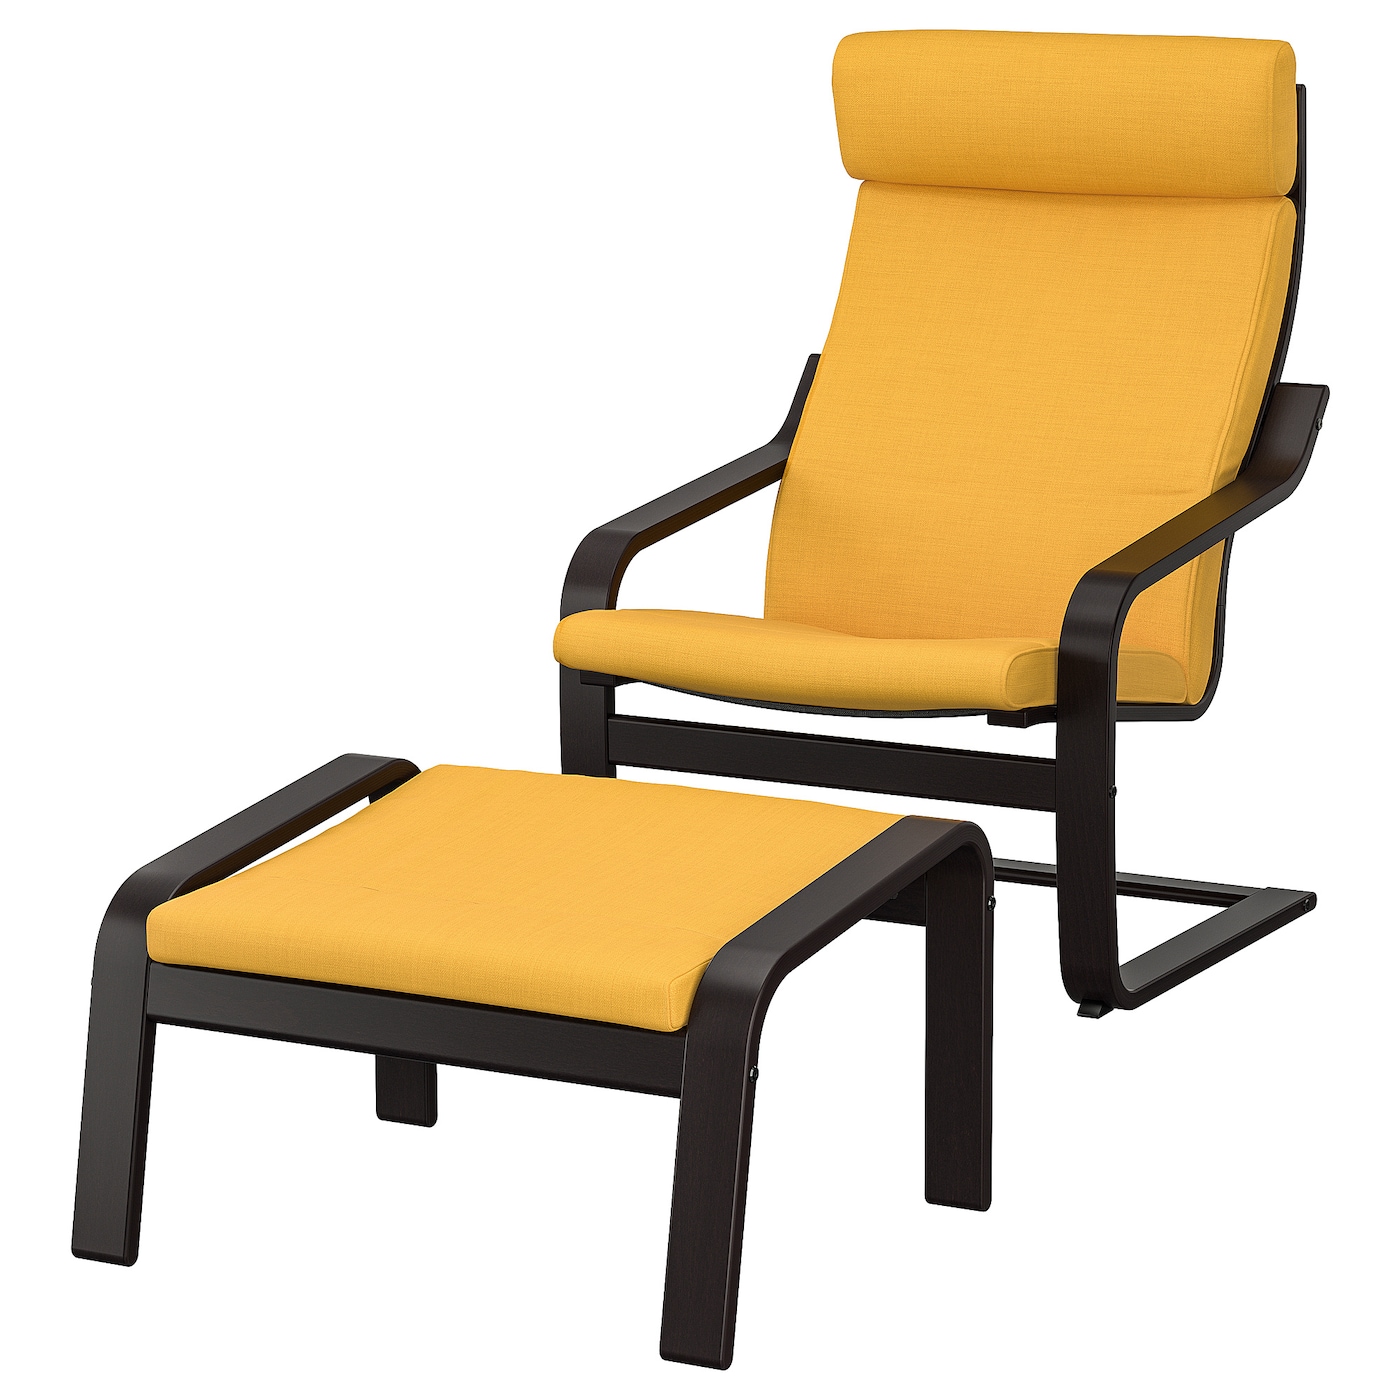 ПОЭНГ Кресло и подставка для ног, черно-коричневый/Скифтебо желтый POÄNG IKEA подставка для ног 7046054 7046055 7046056 желтый